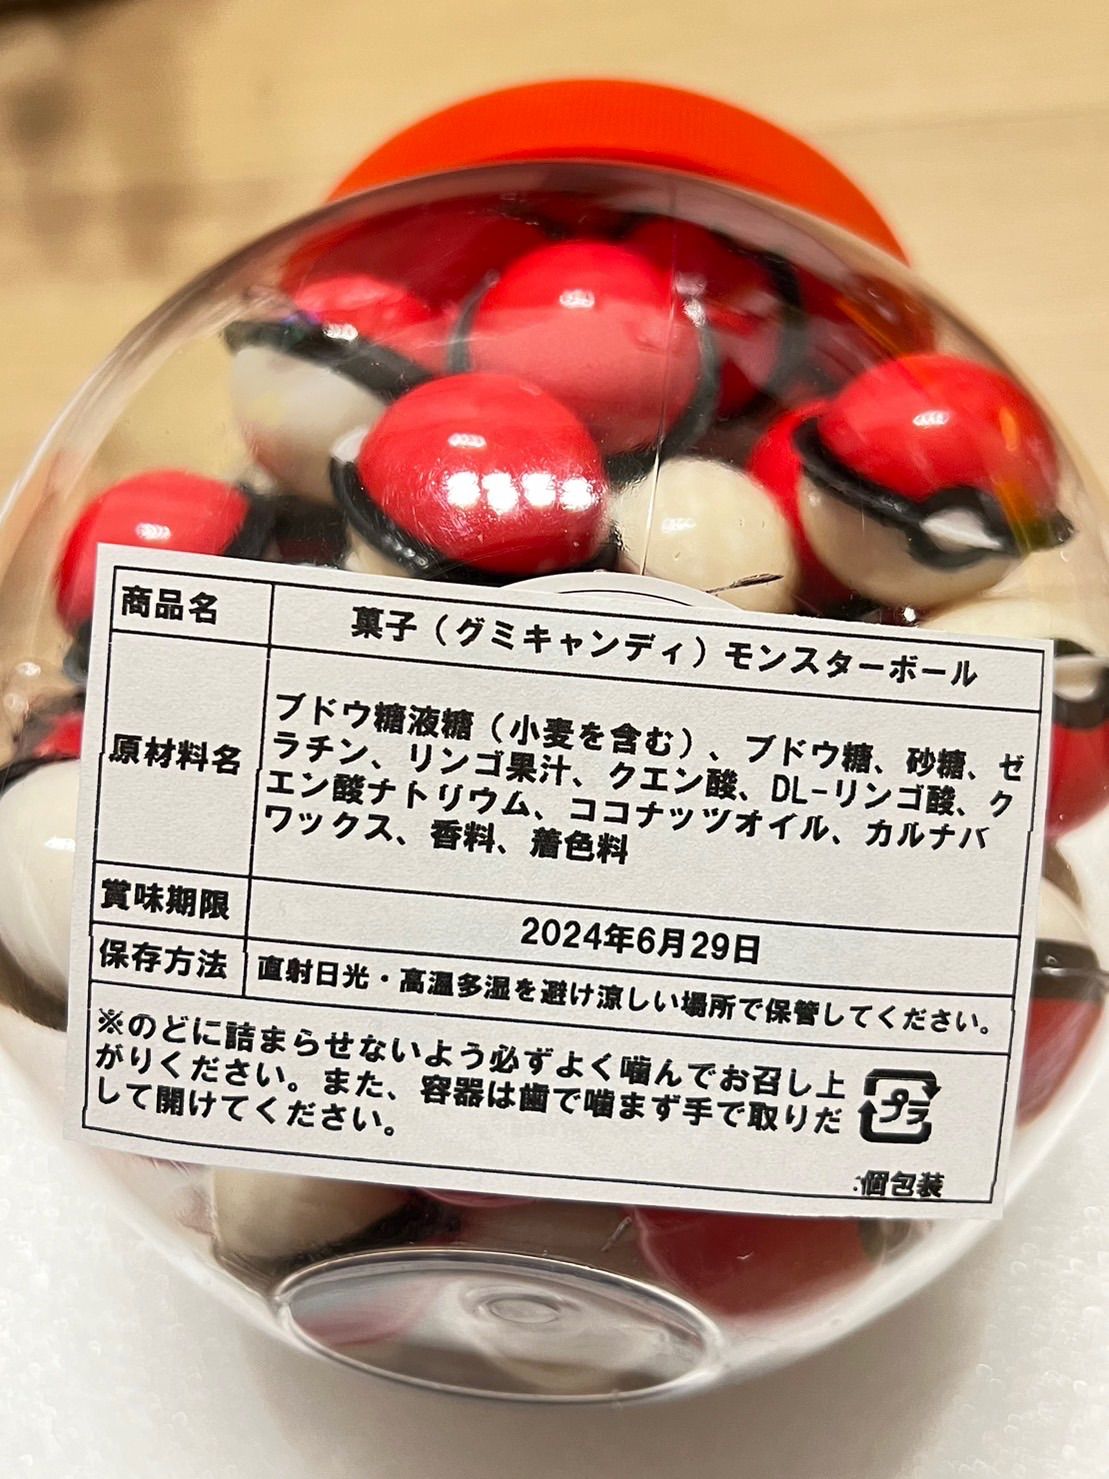 日本正本モンスターボールグミ1箱 スーパーボールグミ1箱 ハイパーボールグミ1箱 菓子